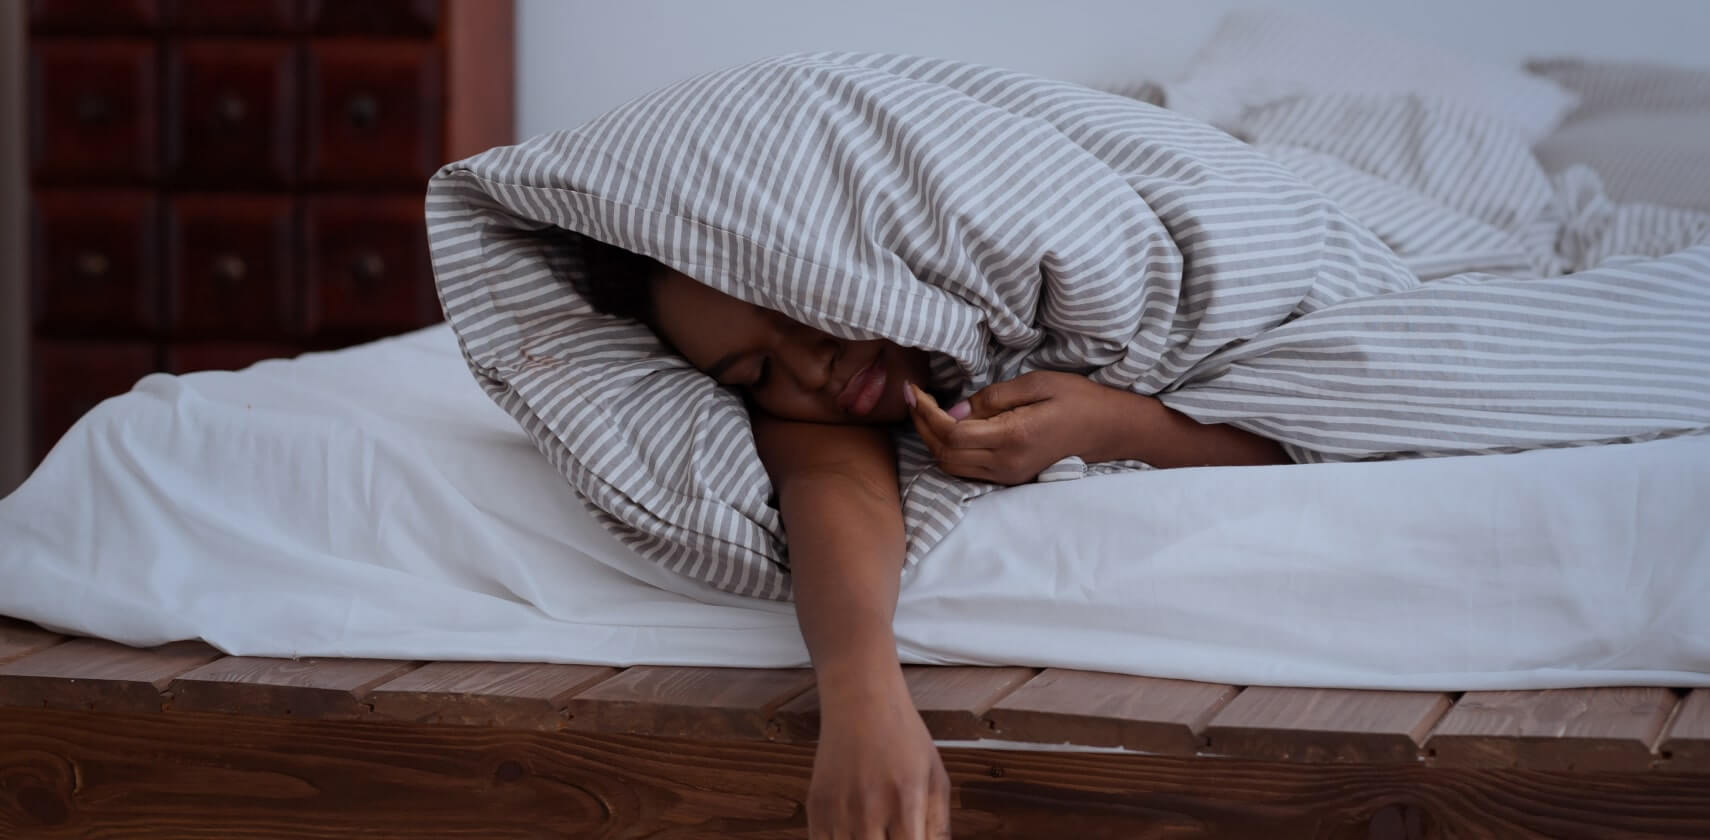 cải thiện chứng rối loạn giấc ngủ không thực tổn 